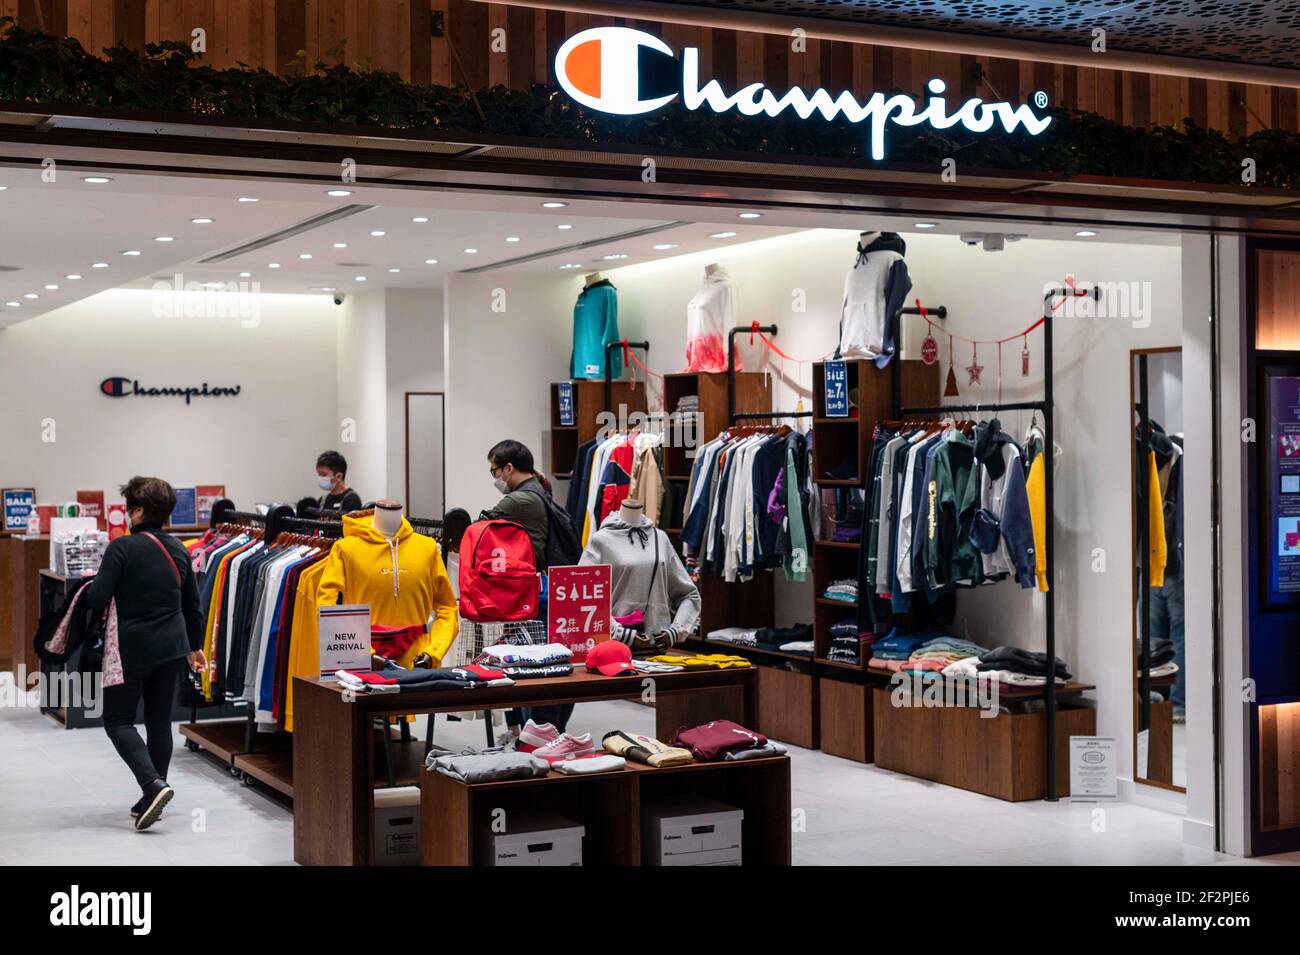 har taget fejl Soar sammenbrud Champion brand hi-res stock photography and images - Alamy